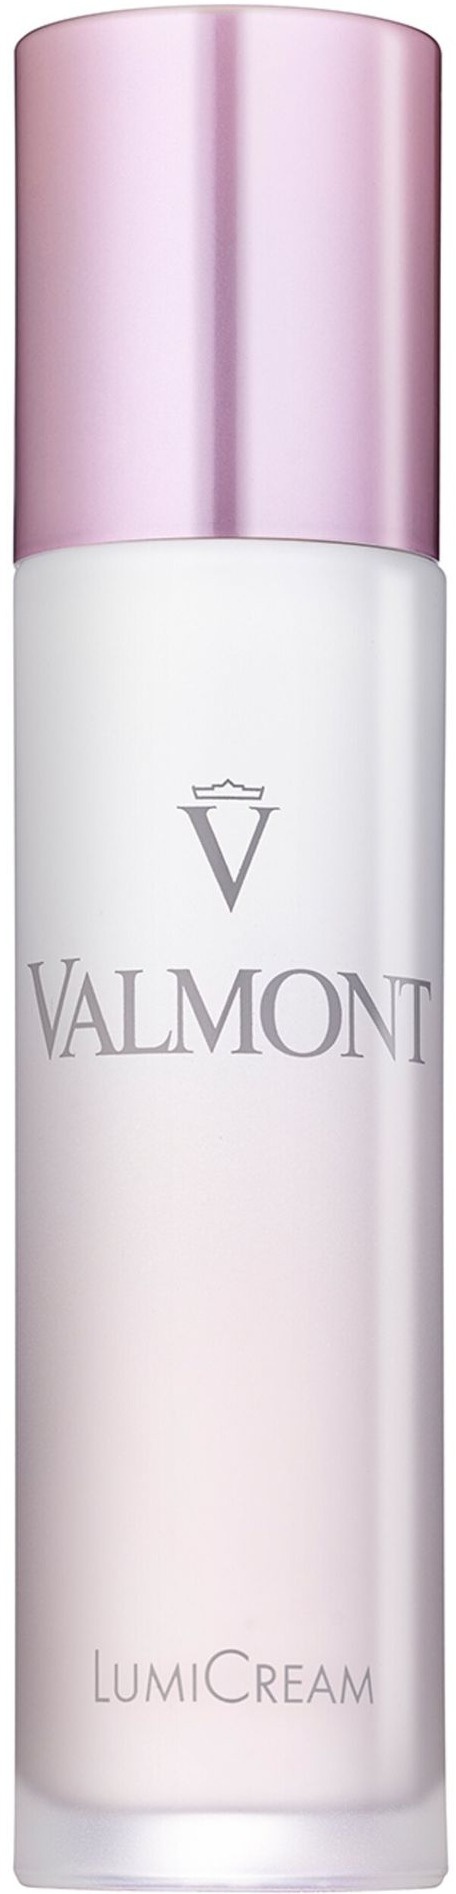 Valmont Lumi-cream